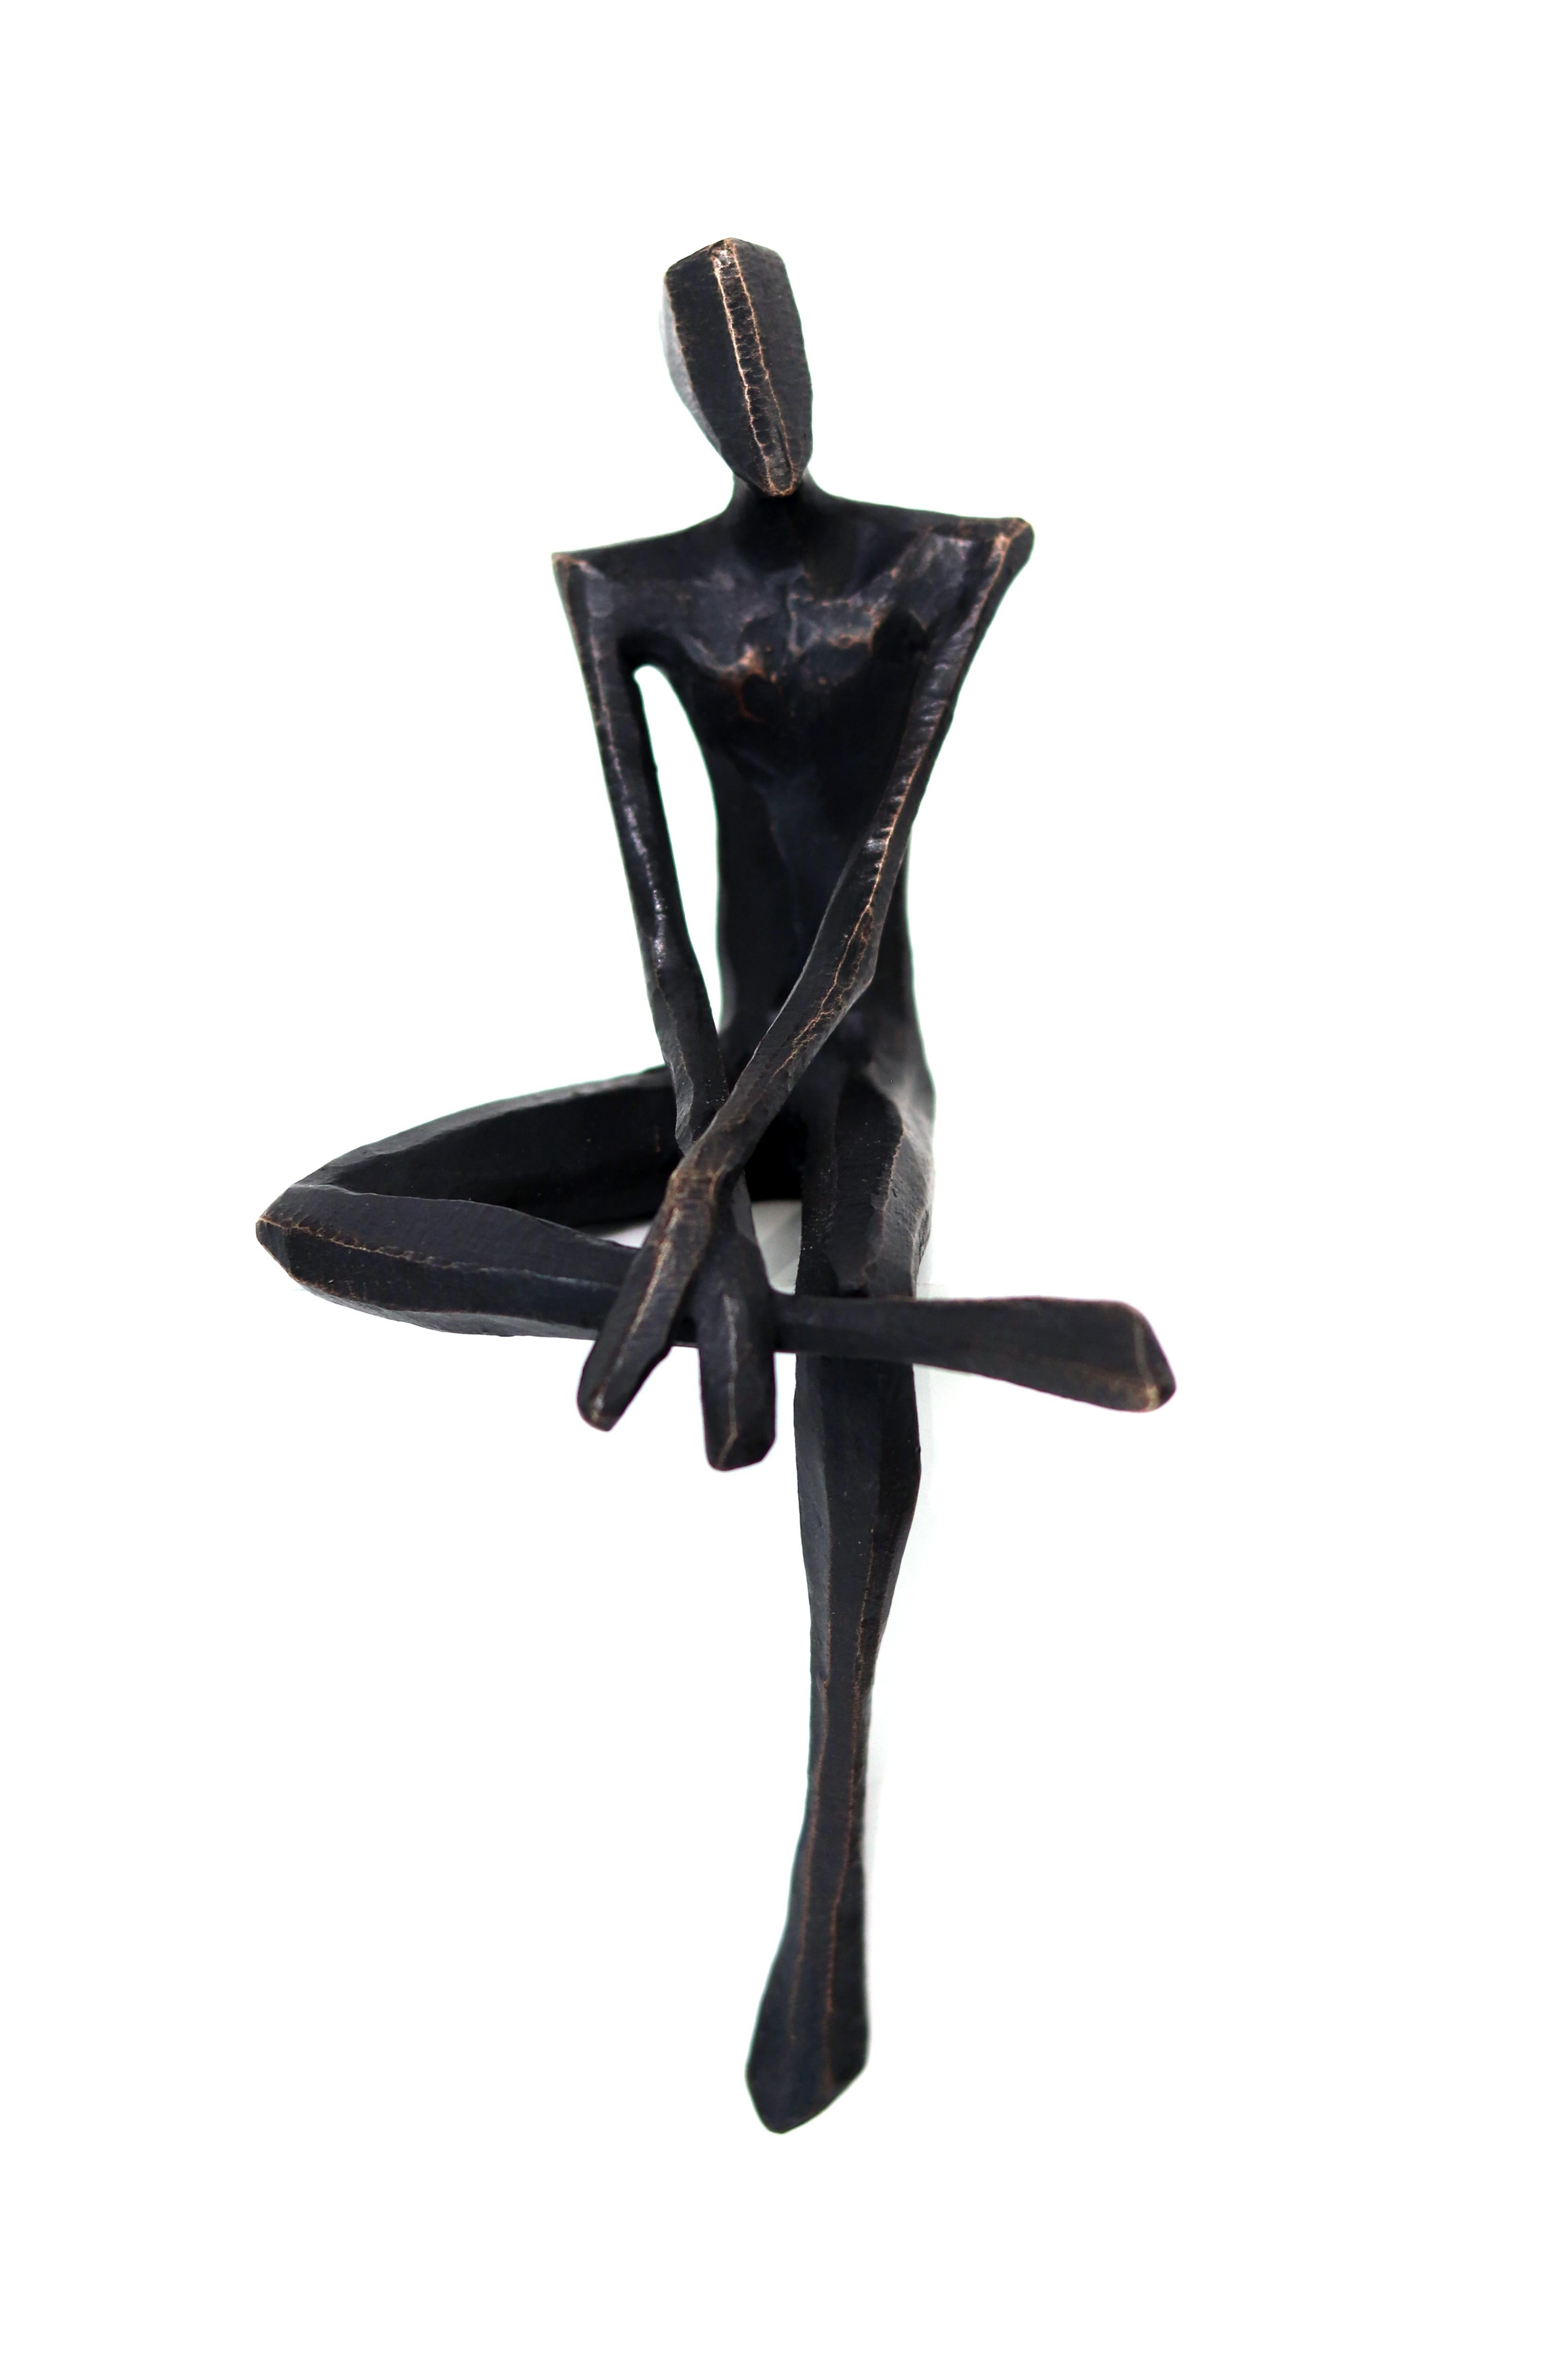 Nando Kallweit Nude Sculpture - José  - One-of-a-kind Male Cubist Sitting Figure Original Bronze Sculpture